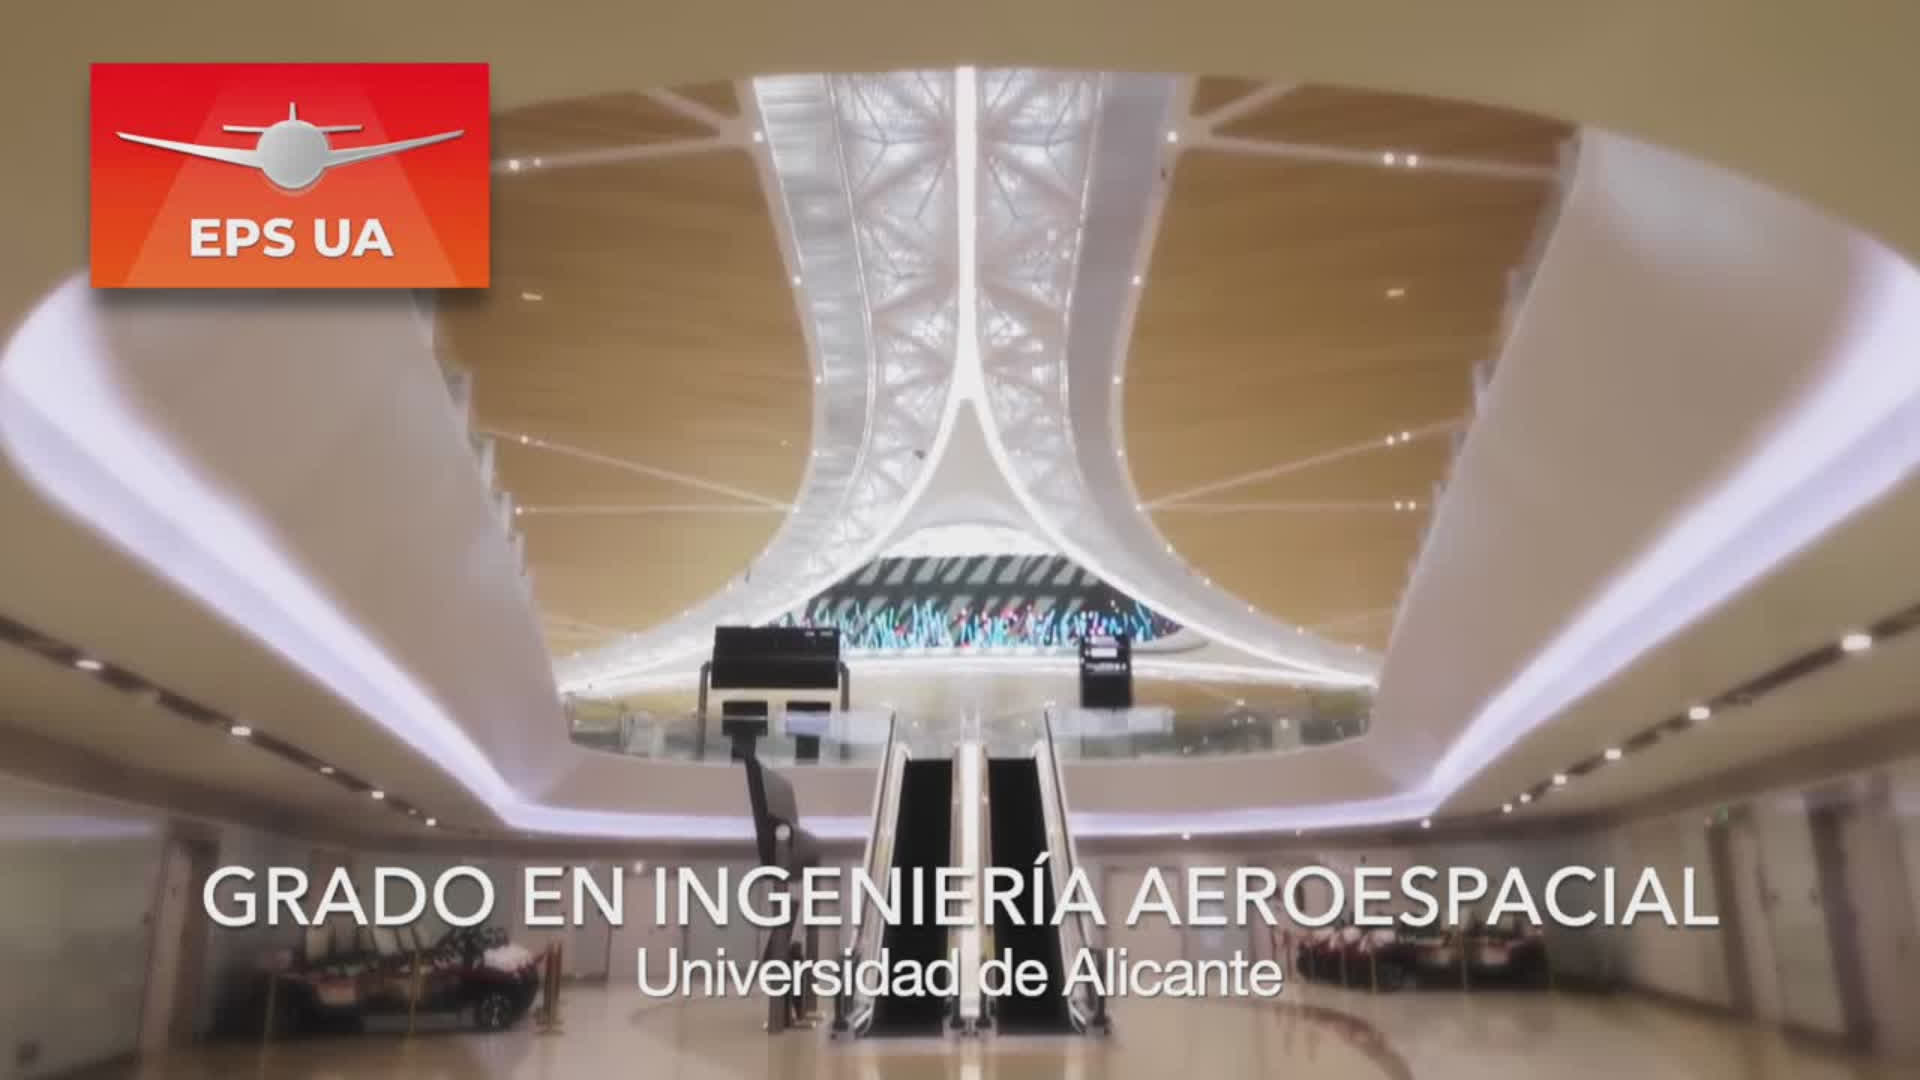 Grado en Ingeniería Aeroespacial, Universidad de Alicante, EPS UA